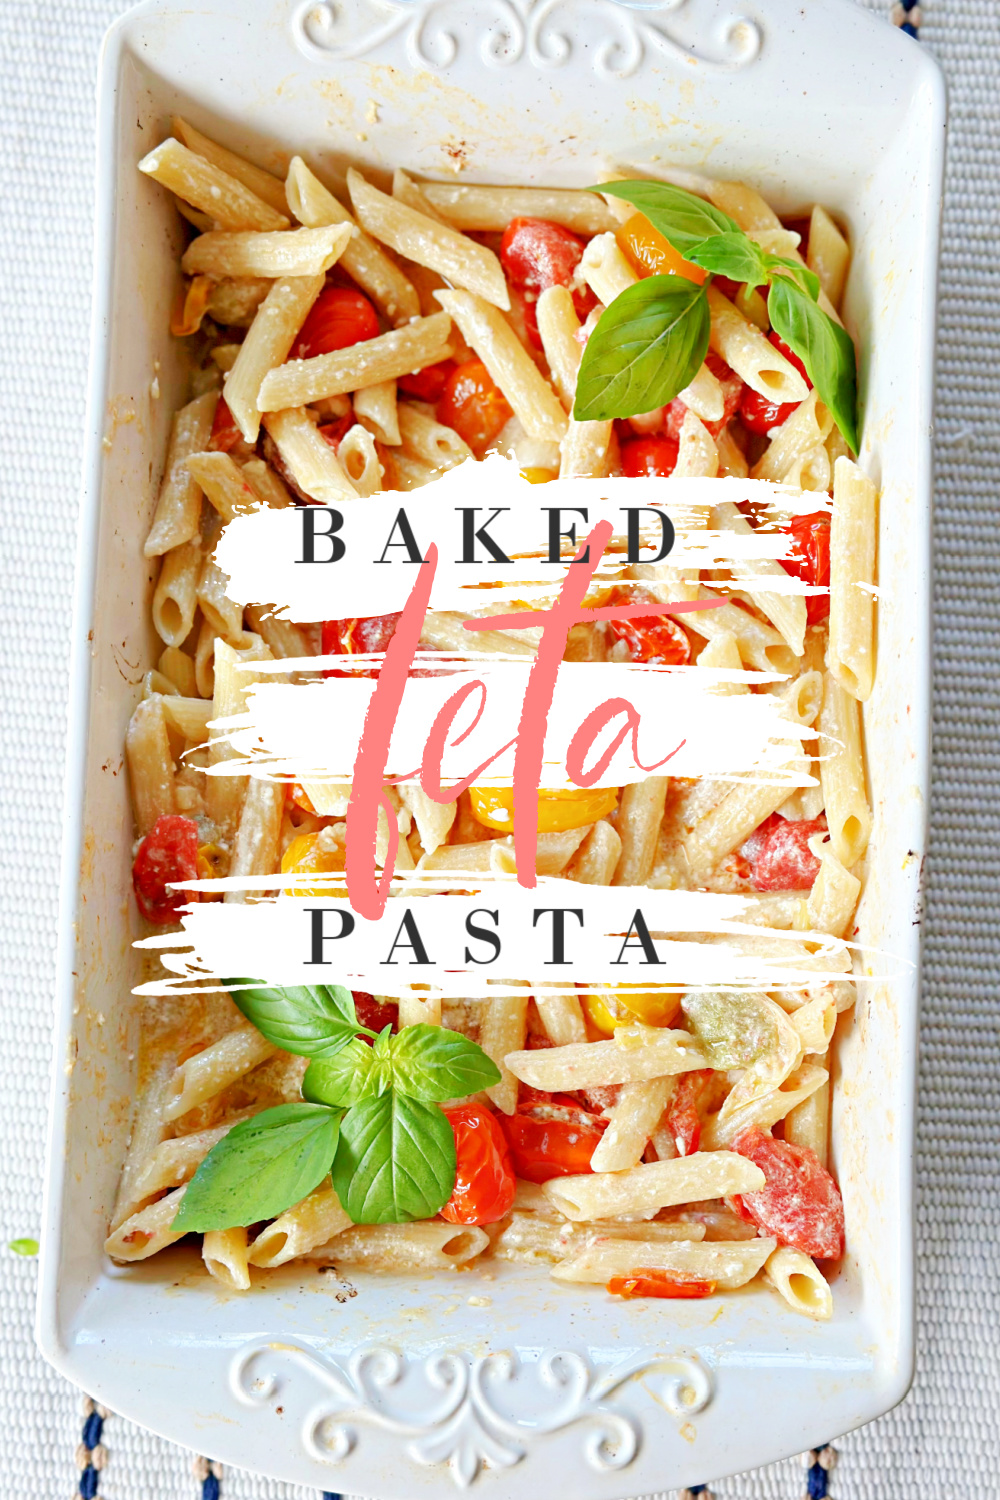 Baked Feta Pasta #feta #bakedrecipe #pasta #easydinnerrecipe #dinner #familydinner #weeknightdinner